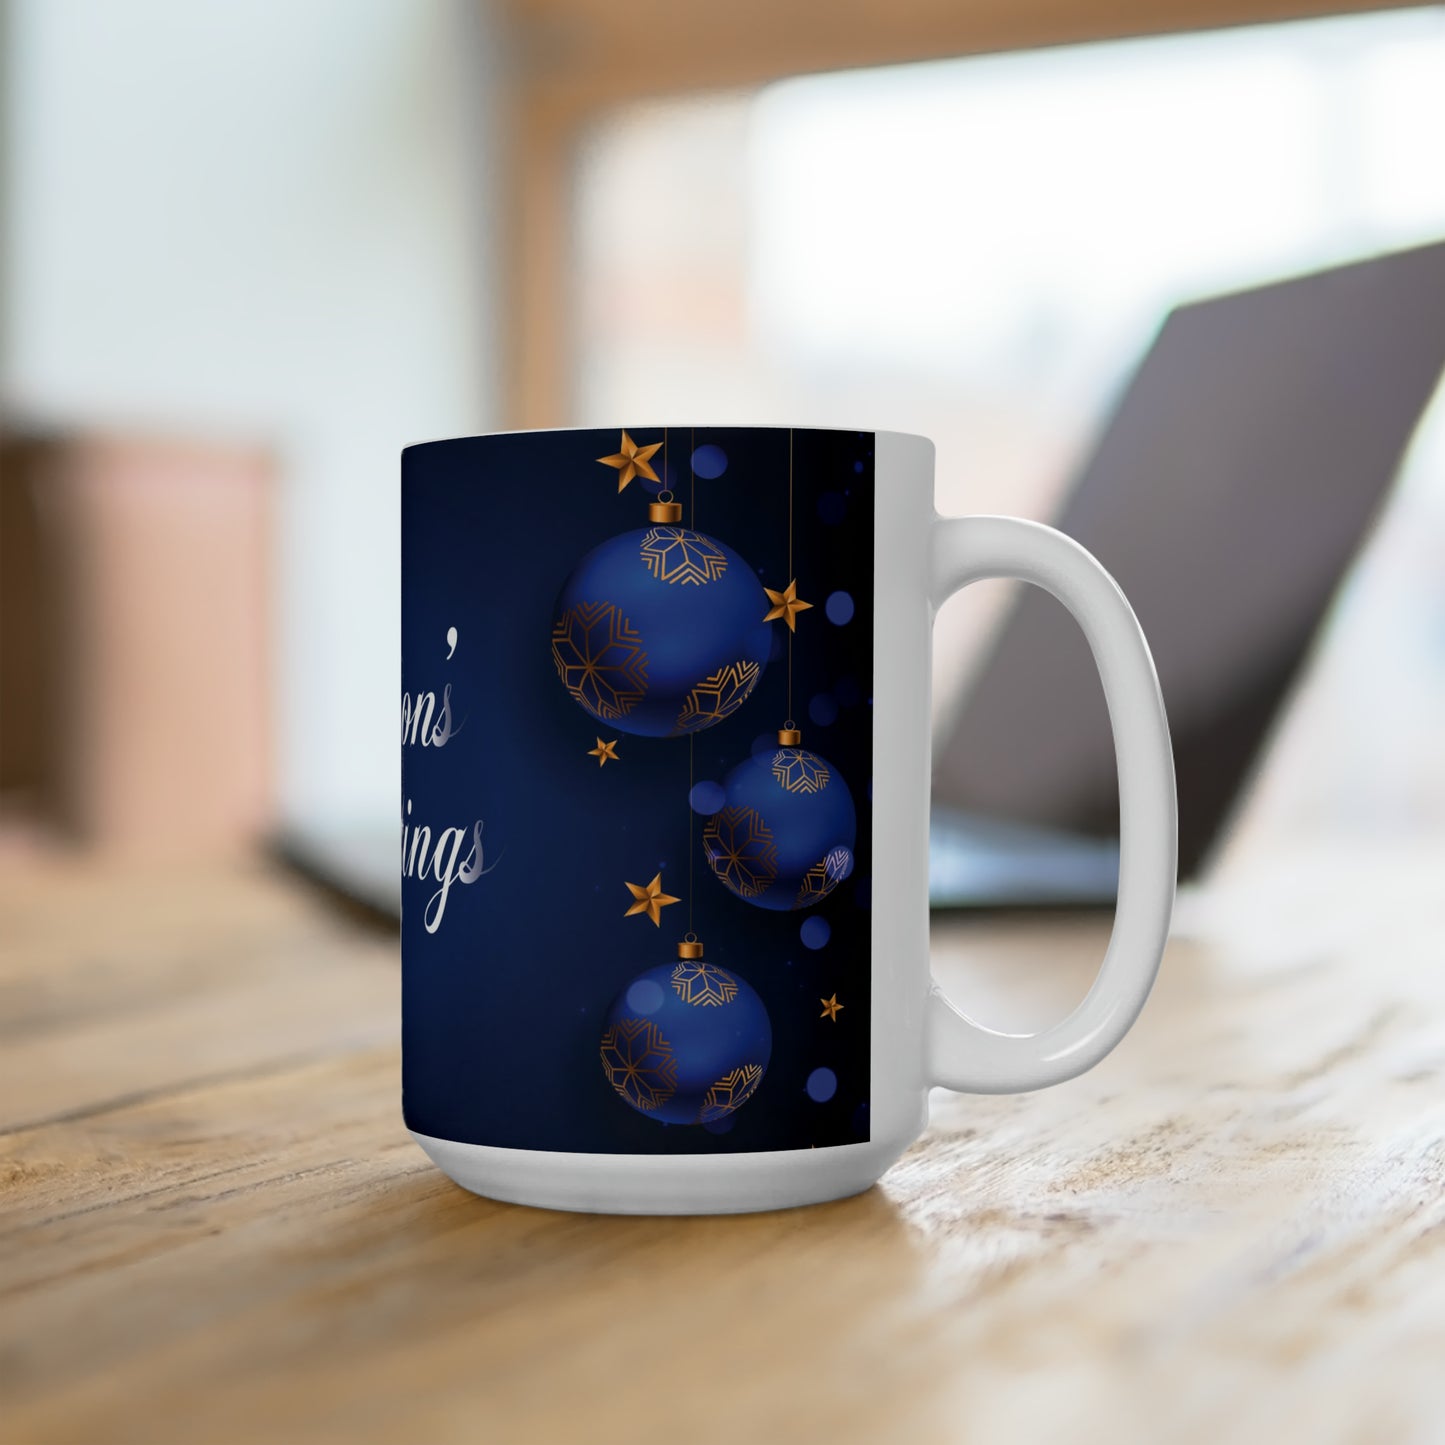 Merry Christmas Ceramic Mug 15oz, Blue